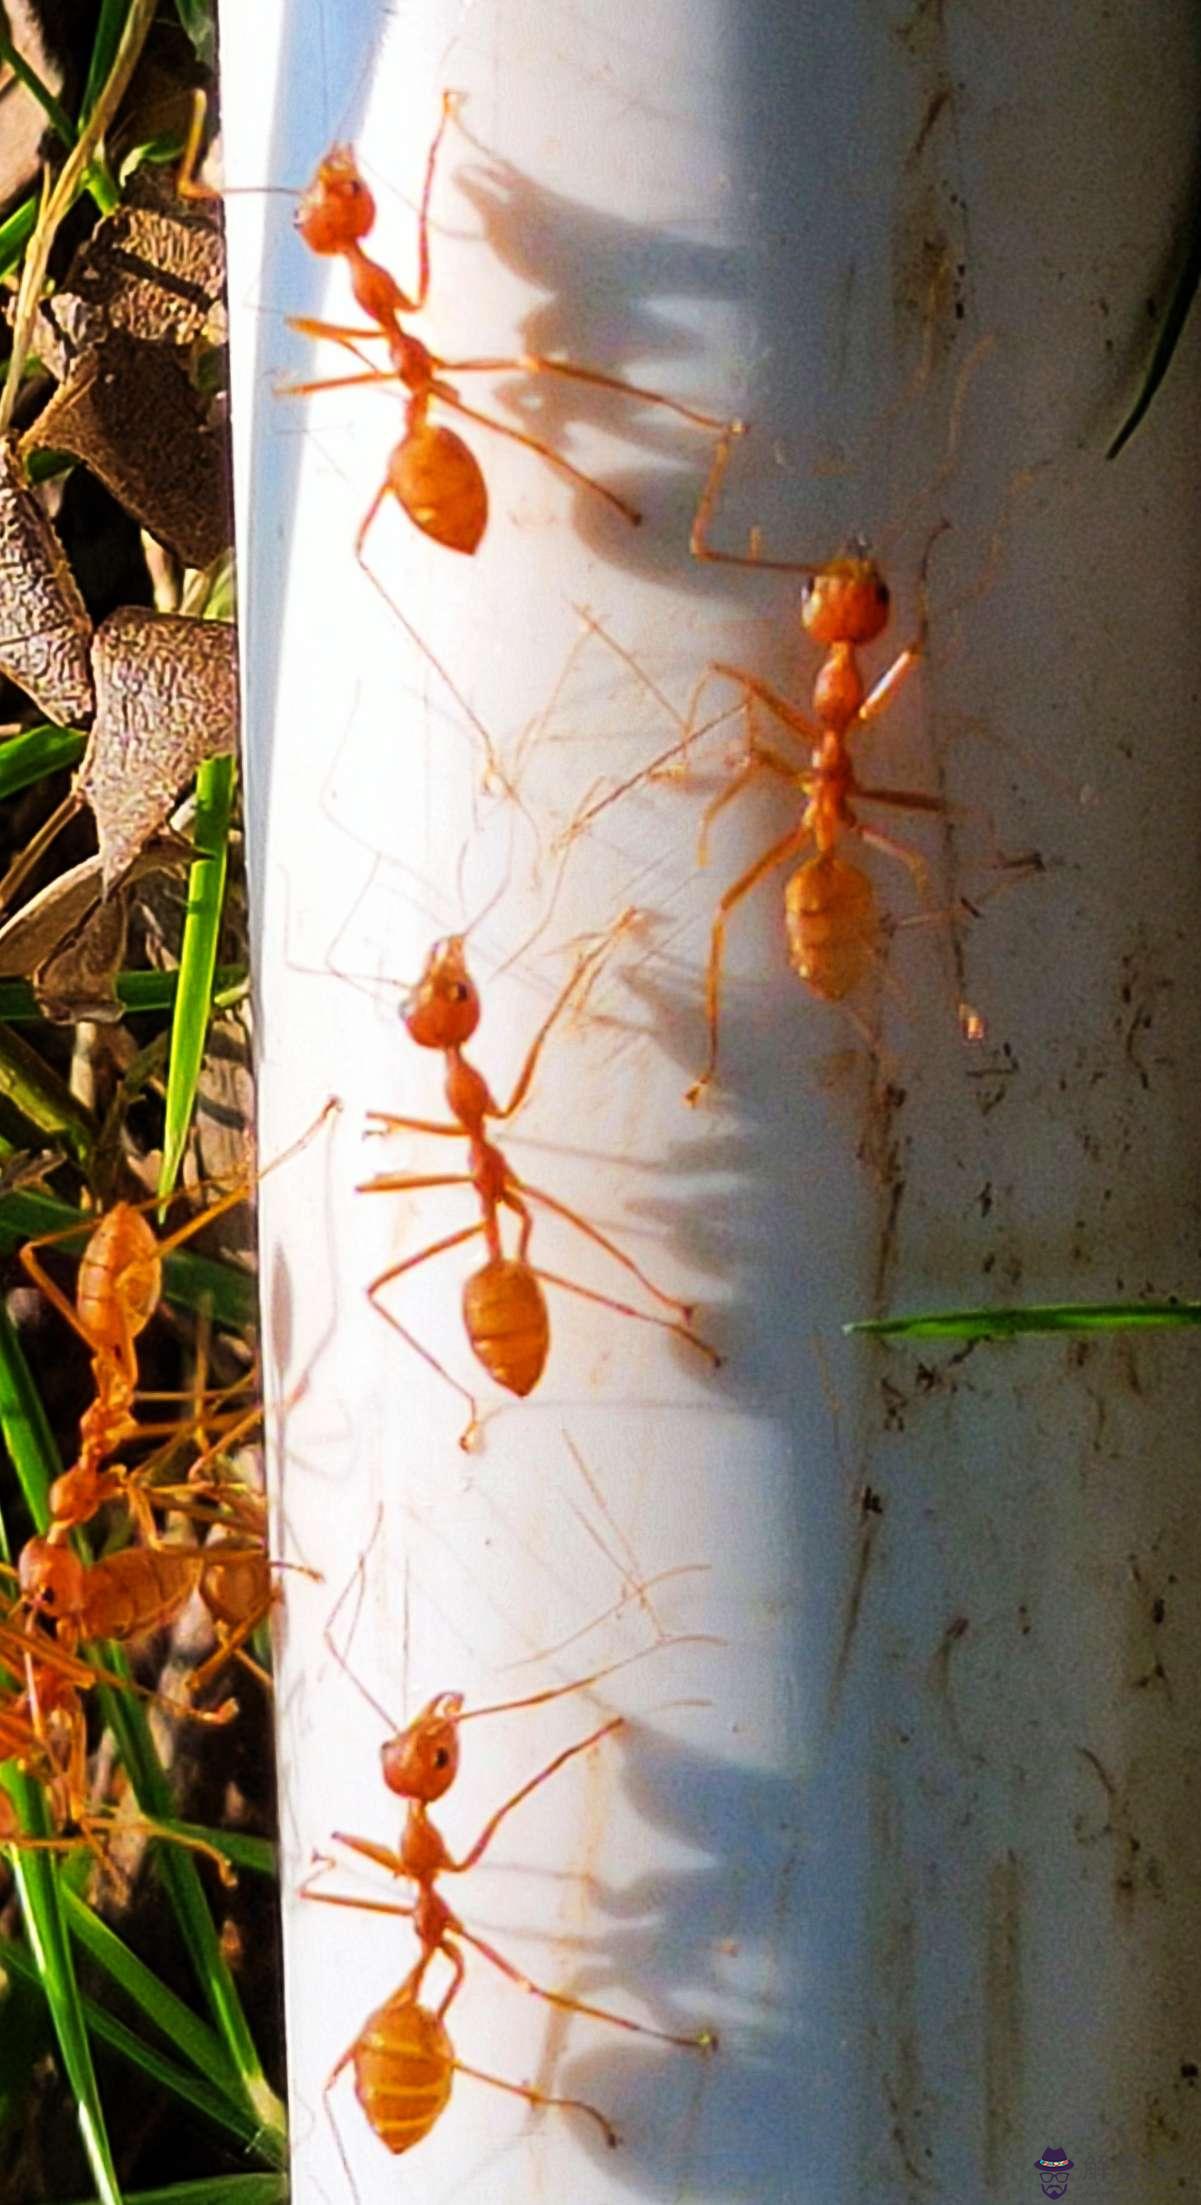 5、紅螞蟻的食物婚配繁殖壽命:請問紅螞蟻吃什麼？